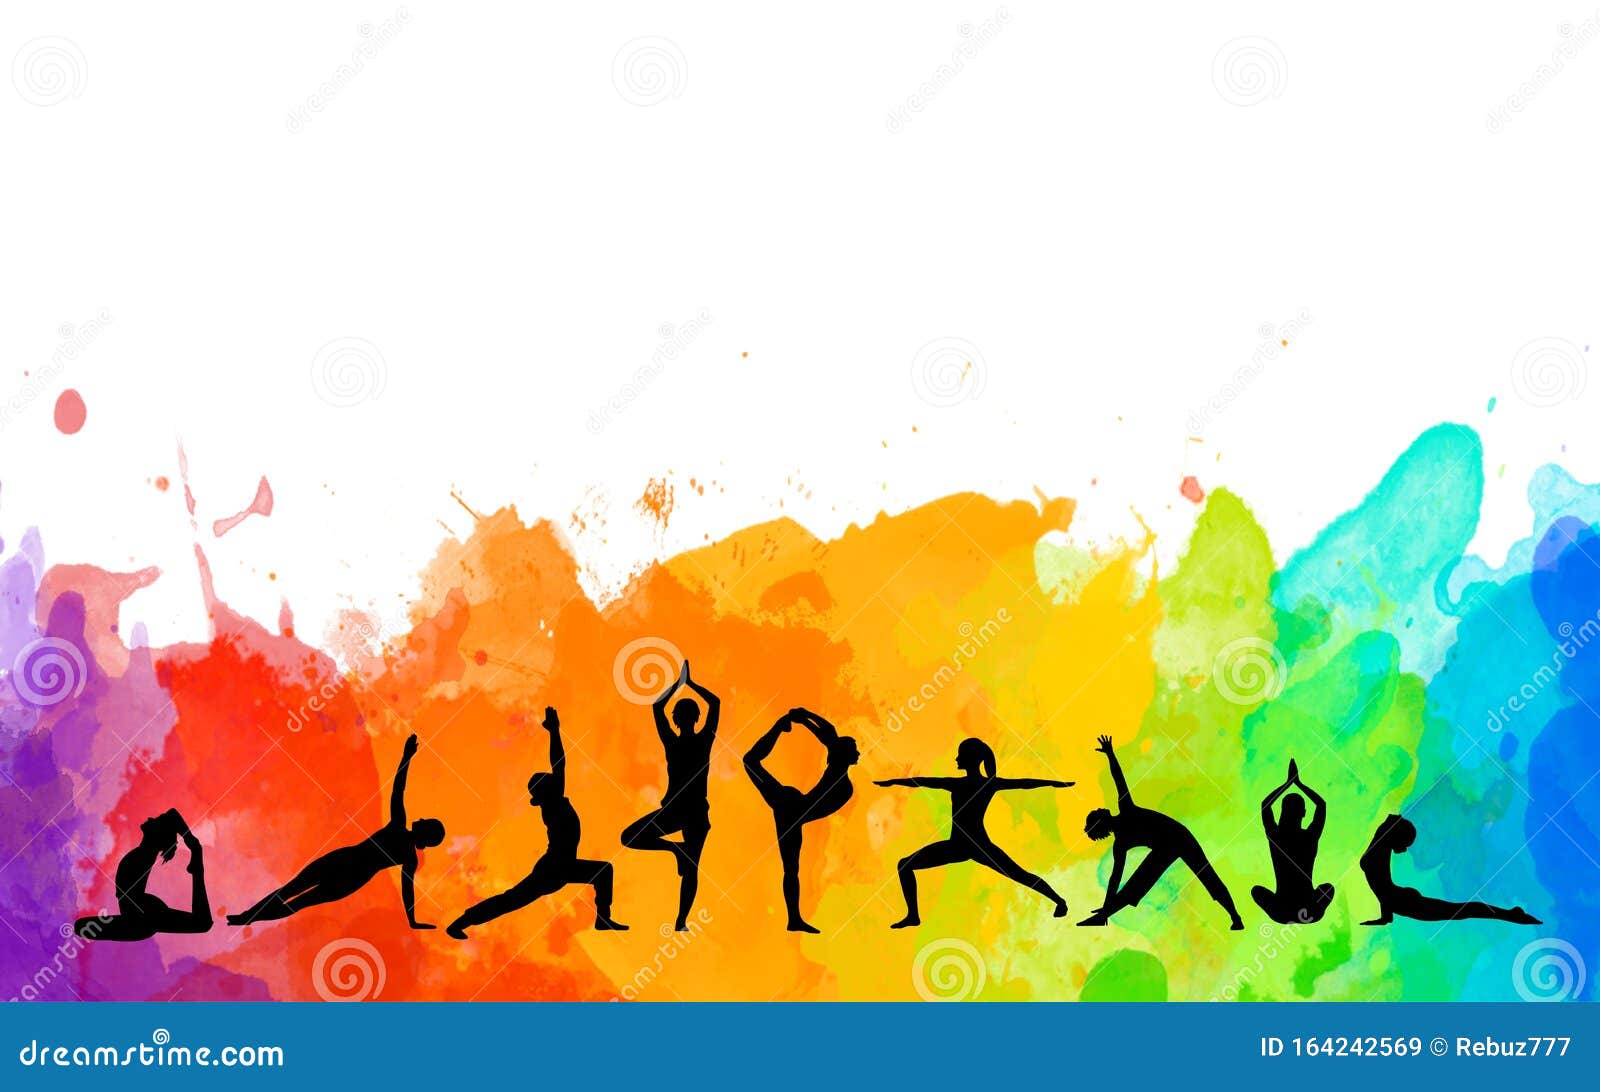 Bộ vẽ người tập Yoga màu sắc chi tiết: Hãy chiêm ngưỡng bộ vẽ người tập Yoga chi tiết và tươi sáng để cảm nhận tình yêu và sự tôn trọng dành cho việc tập Yoga. Những chi tiết tinh tế và màu sắc tươi sáng sẽ giúp bạn hiểu rõ hơn về các động tác Yoga và làm tăng sự hứng thú của bạn.